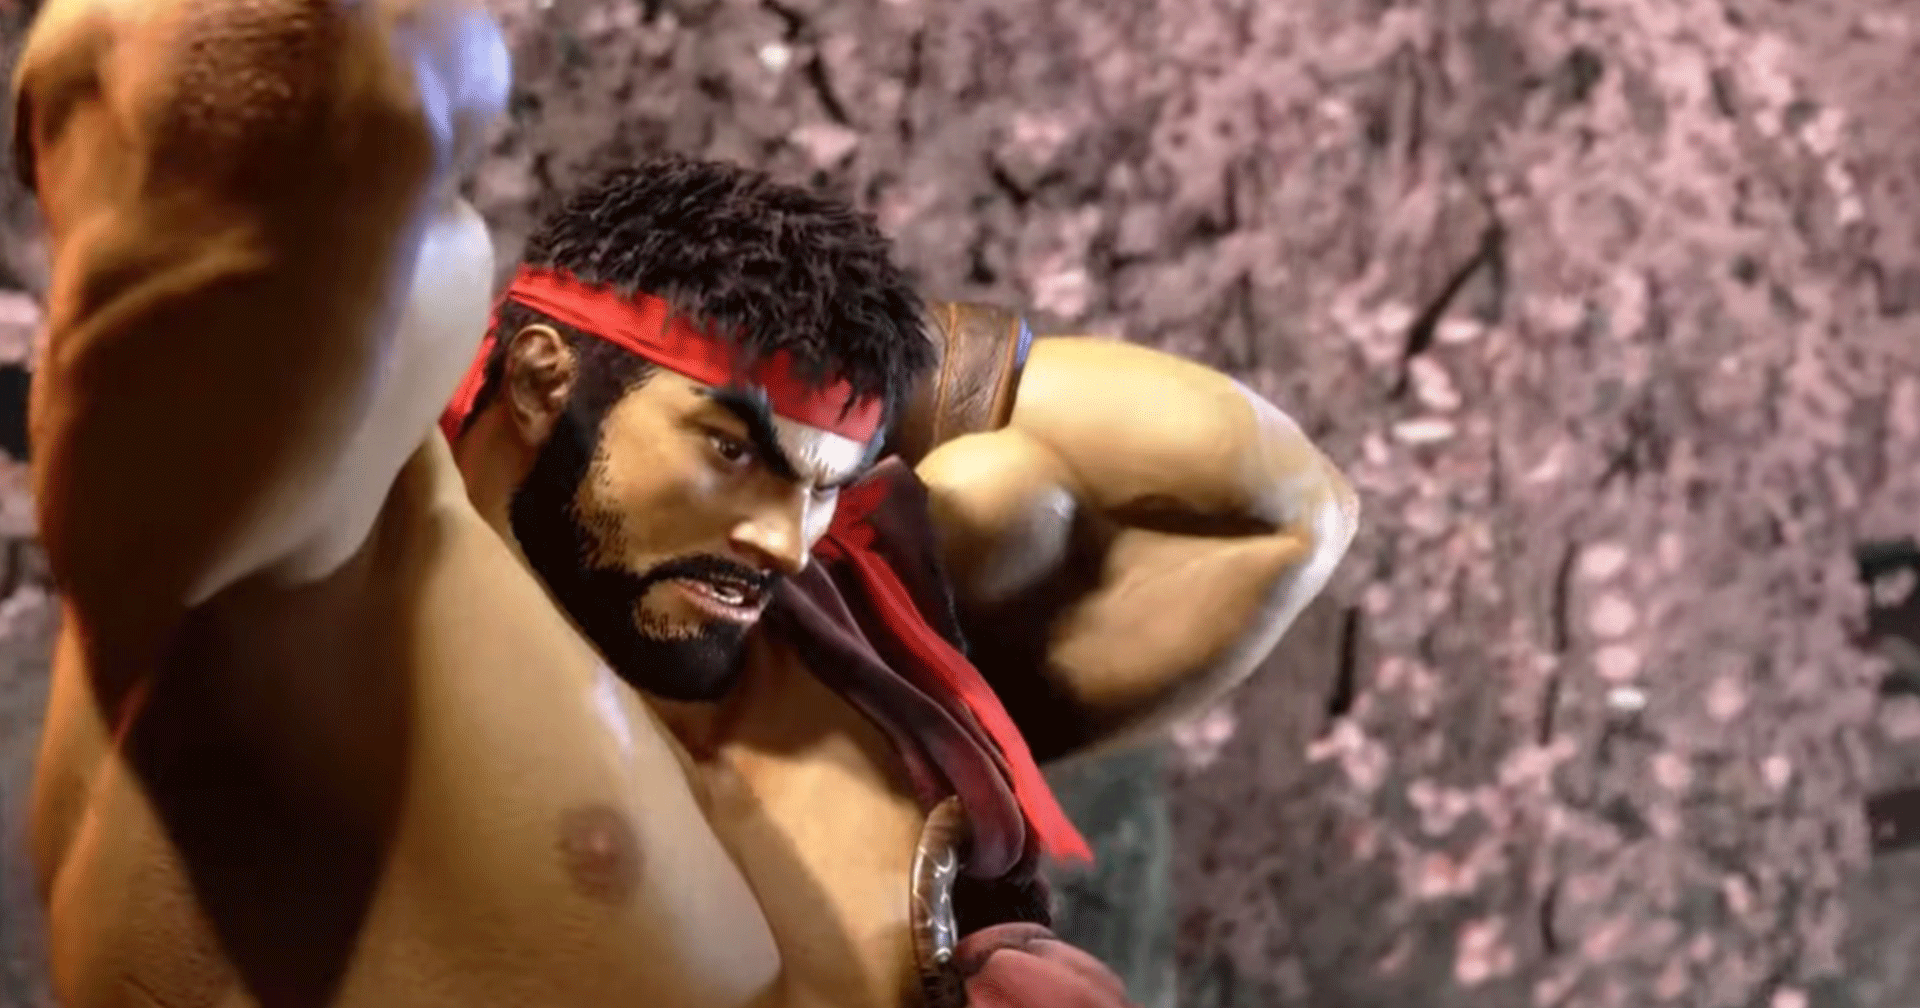 เกมเมอร์ญี่ปุ่นชม Street Fighter 6 ที่ปั้นหัวนมของ Ryu ออกมาได้ ‘เ ก เ ร’ มาก